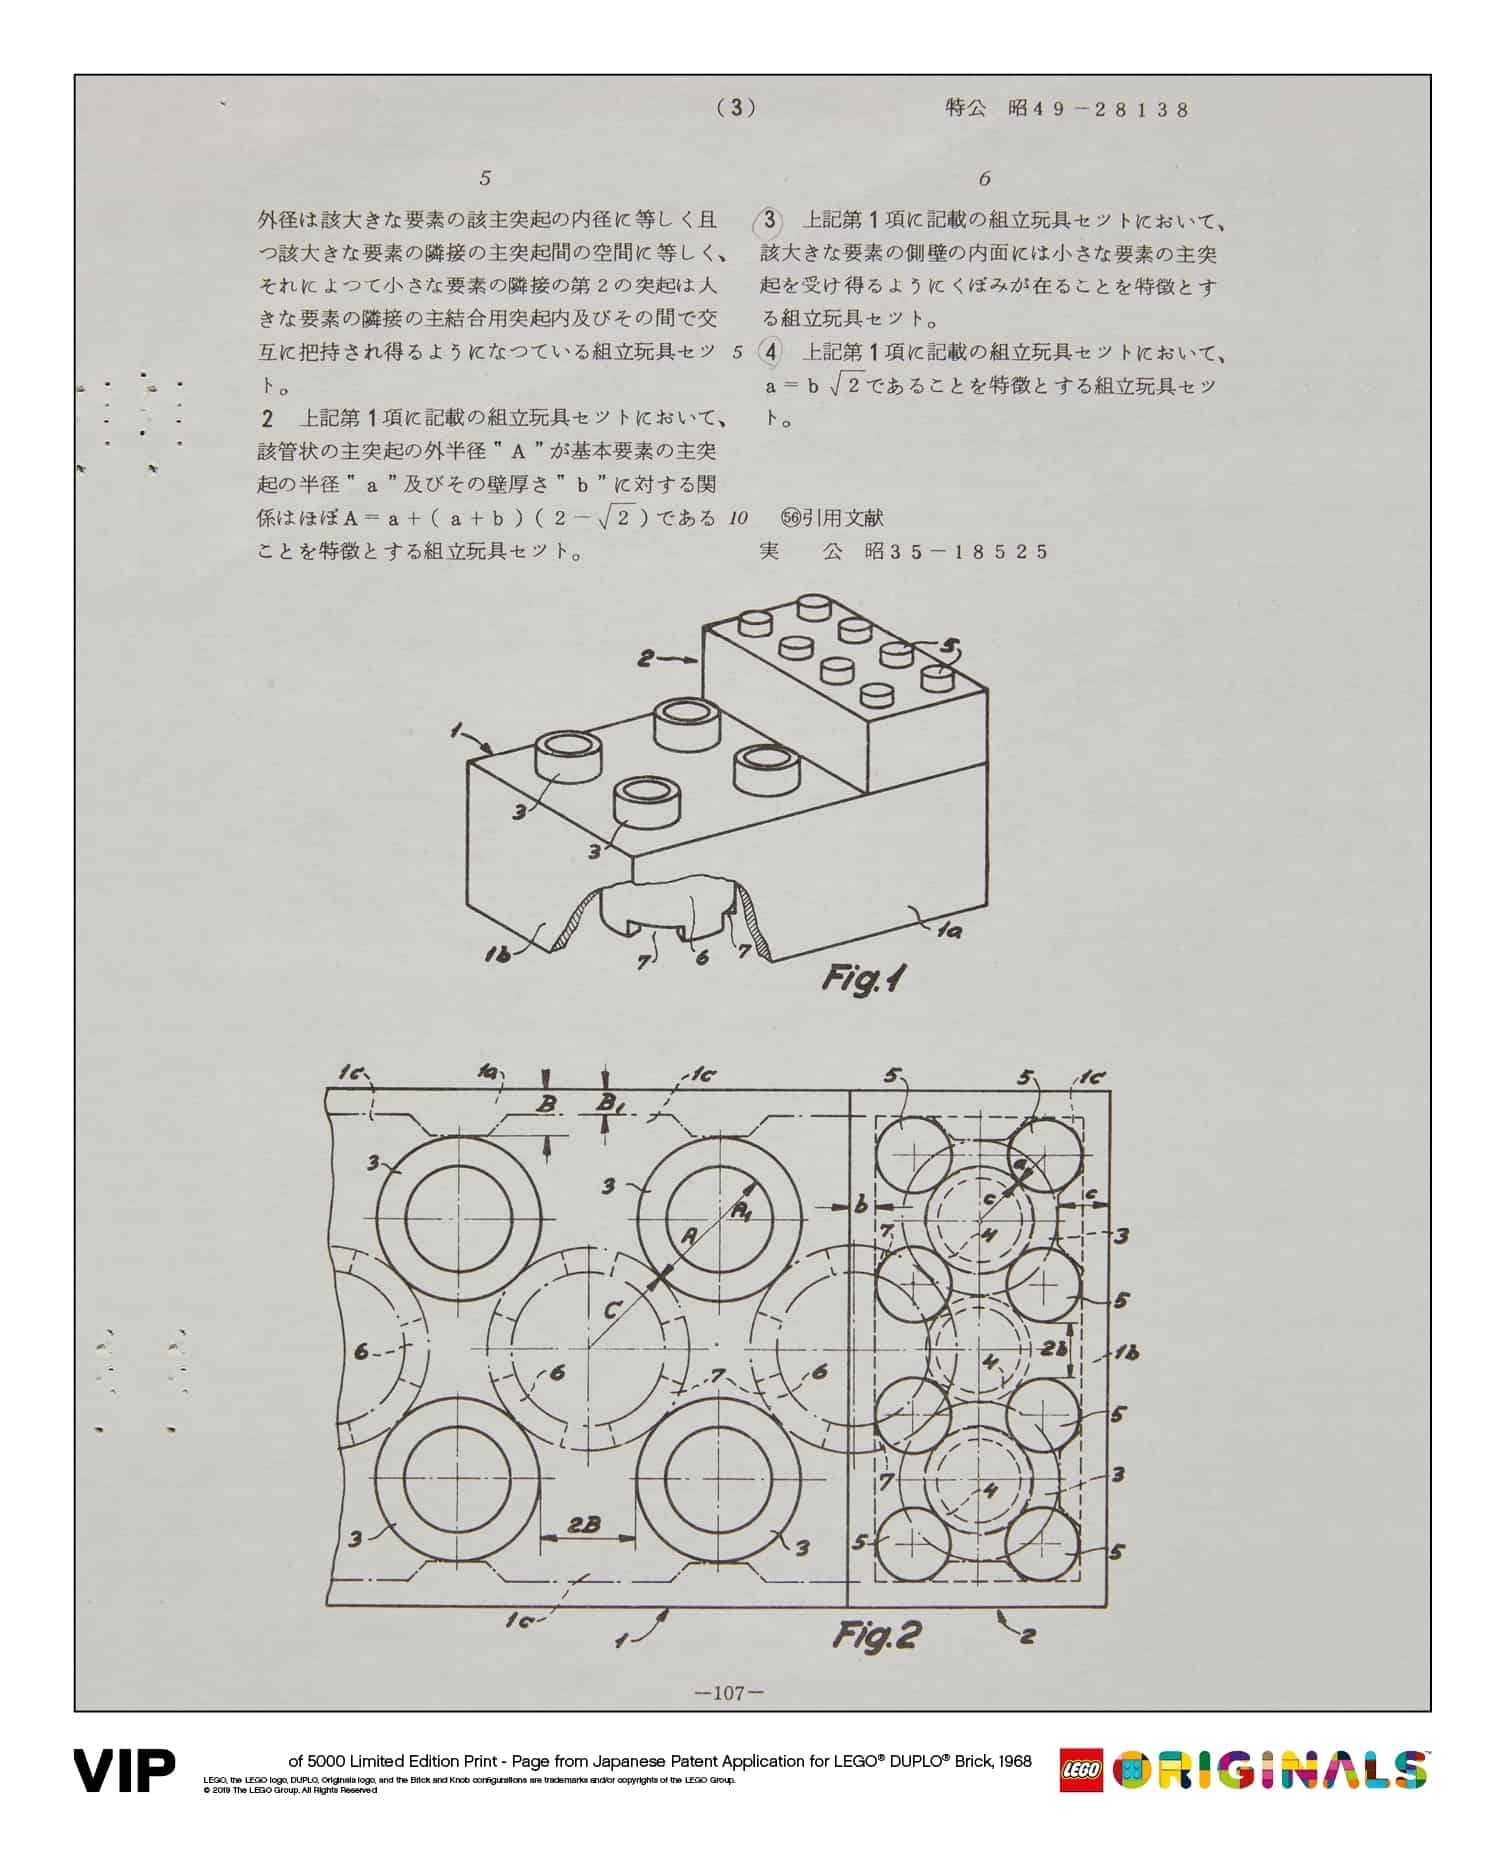 japanese patent lego duplo brick 1968 5006007